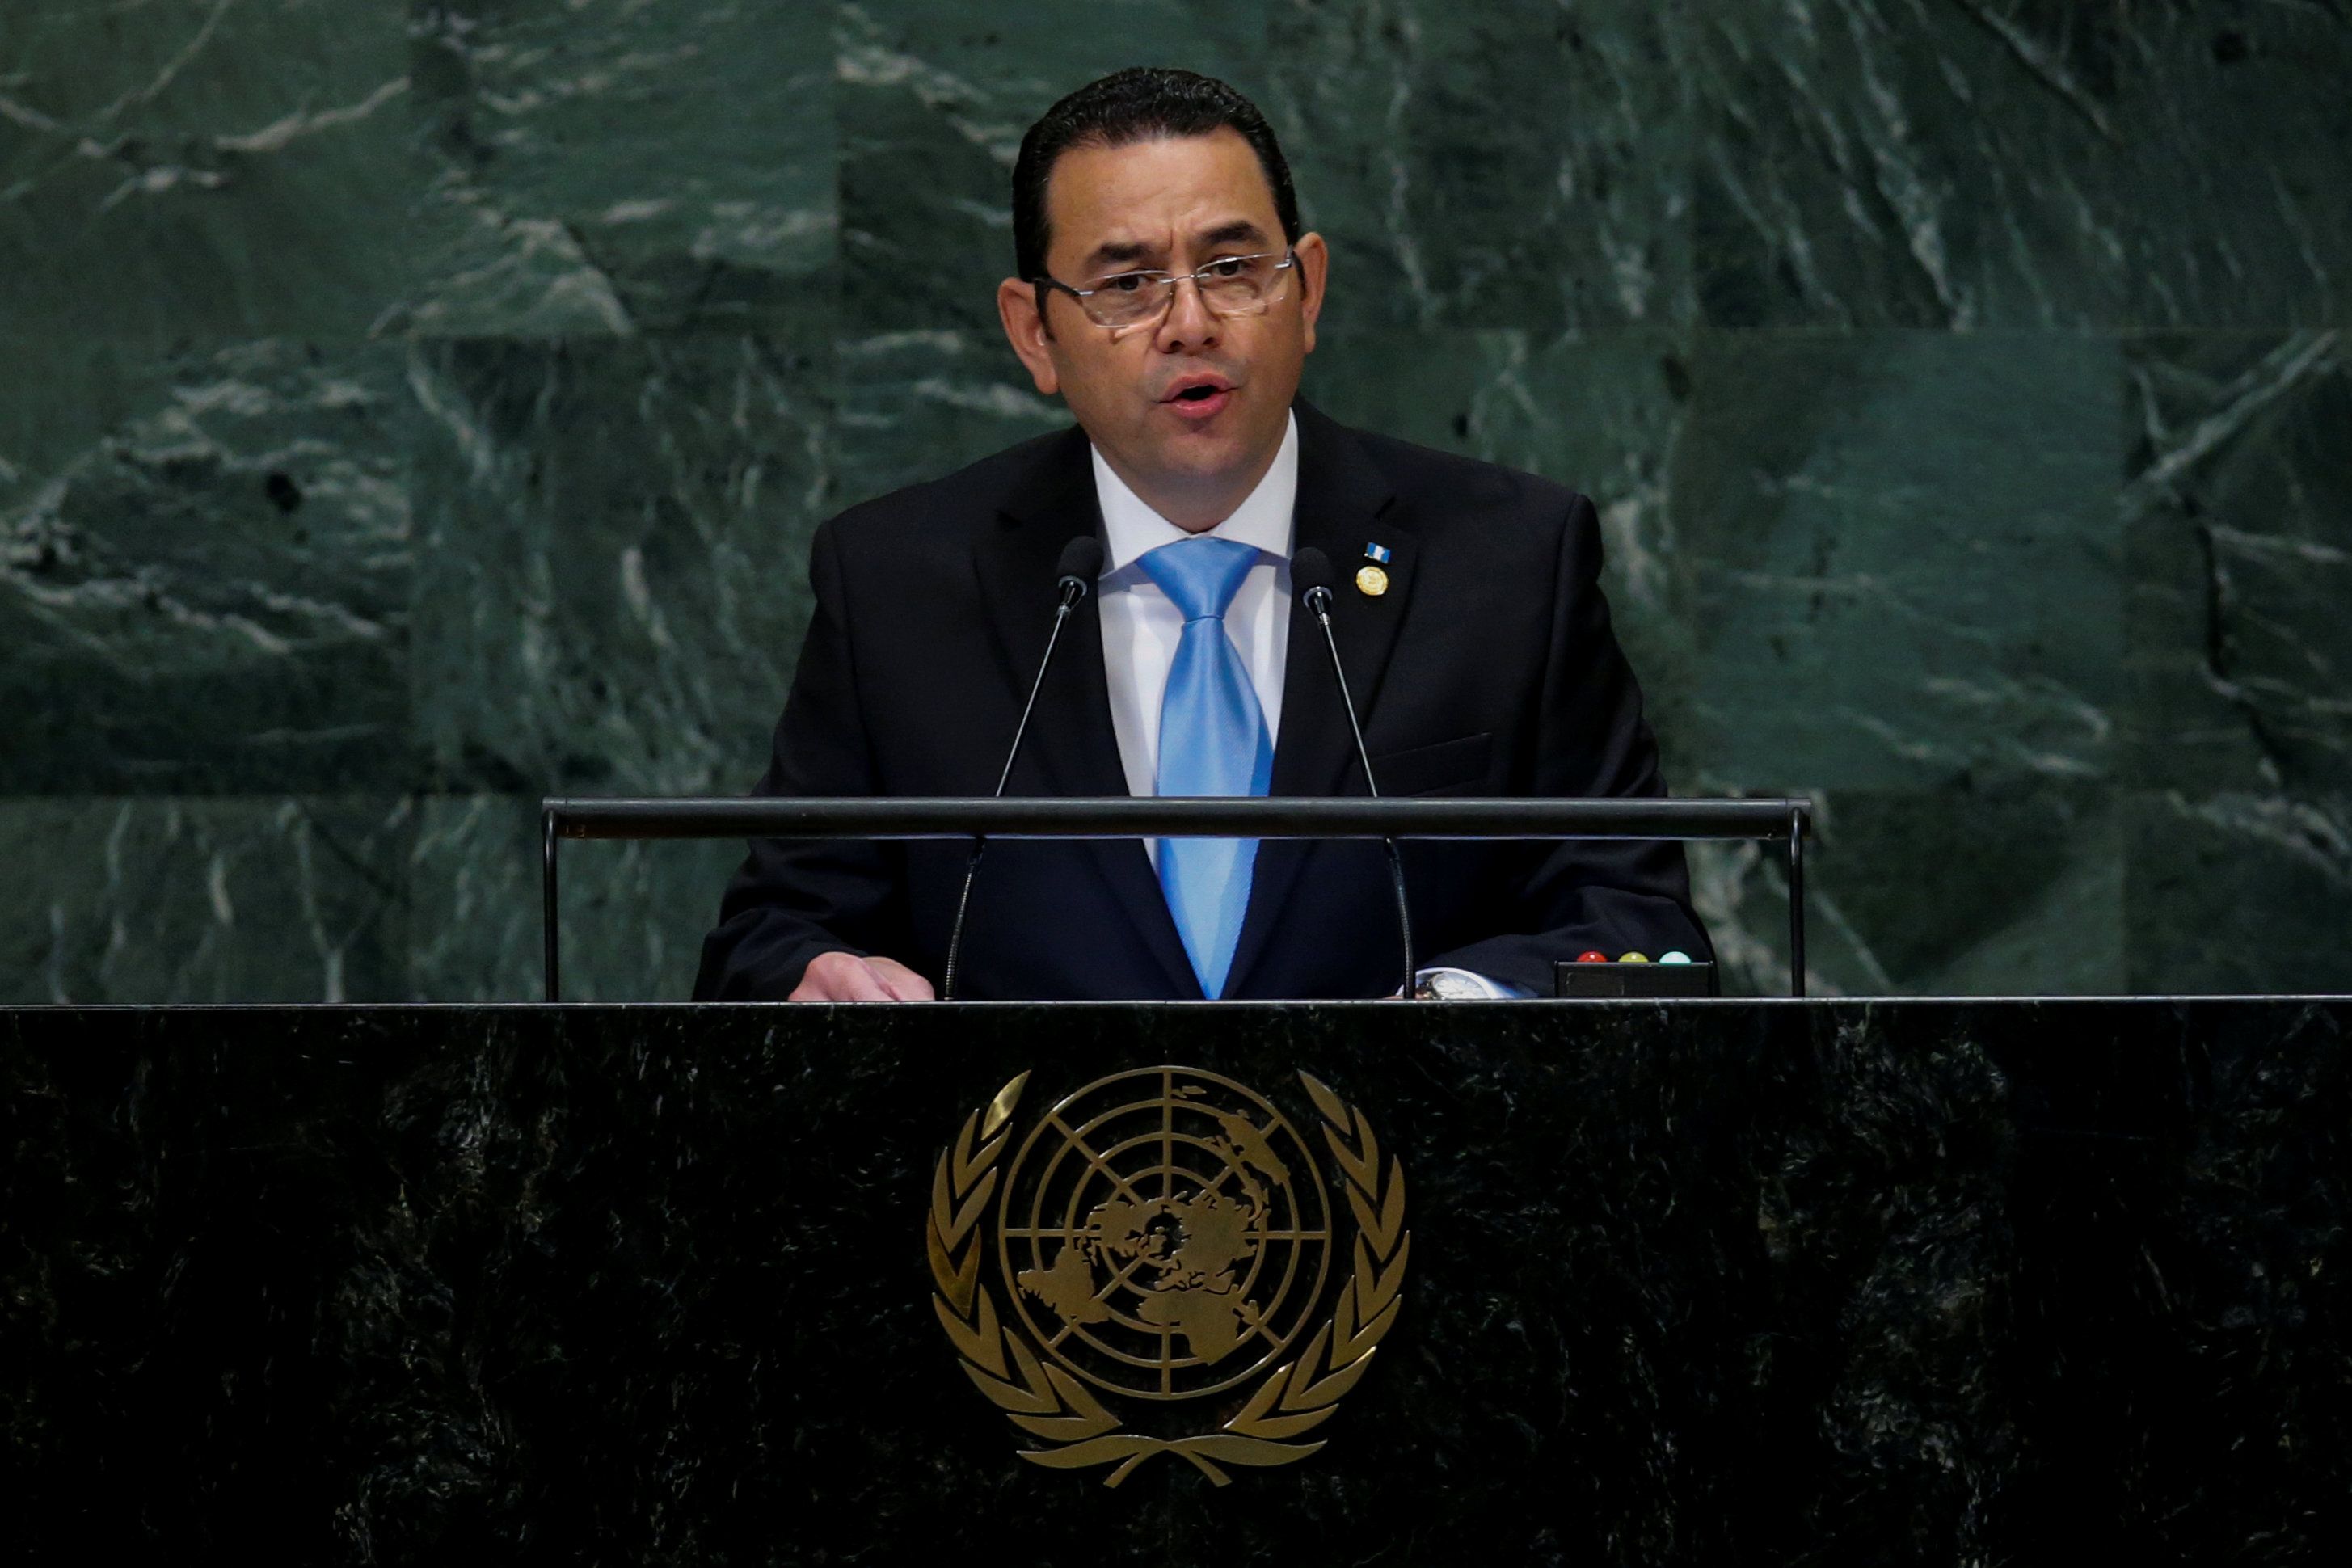 Morales destacó que en Guatemala no quieren enfrentamientos, “queremos paz y justicia”.